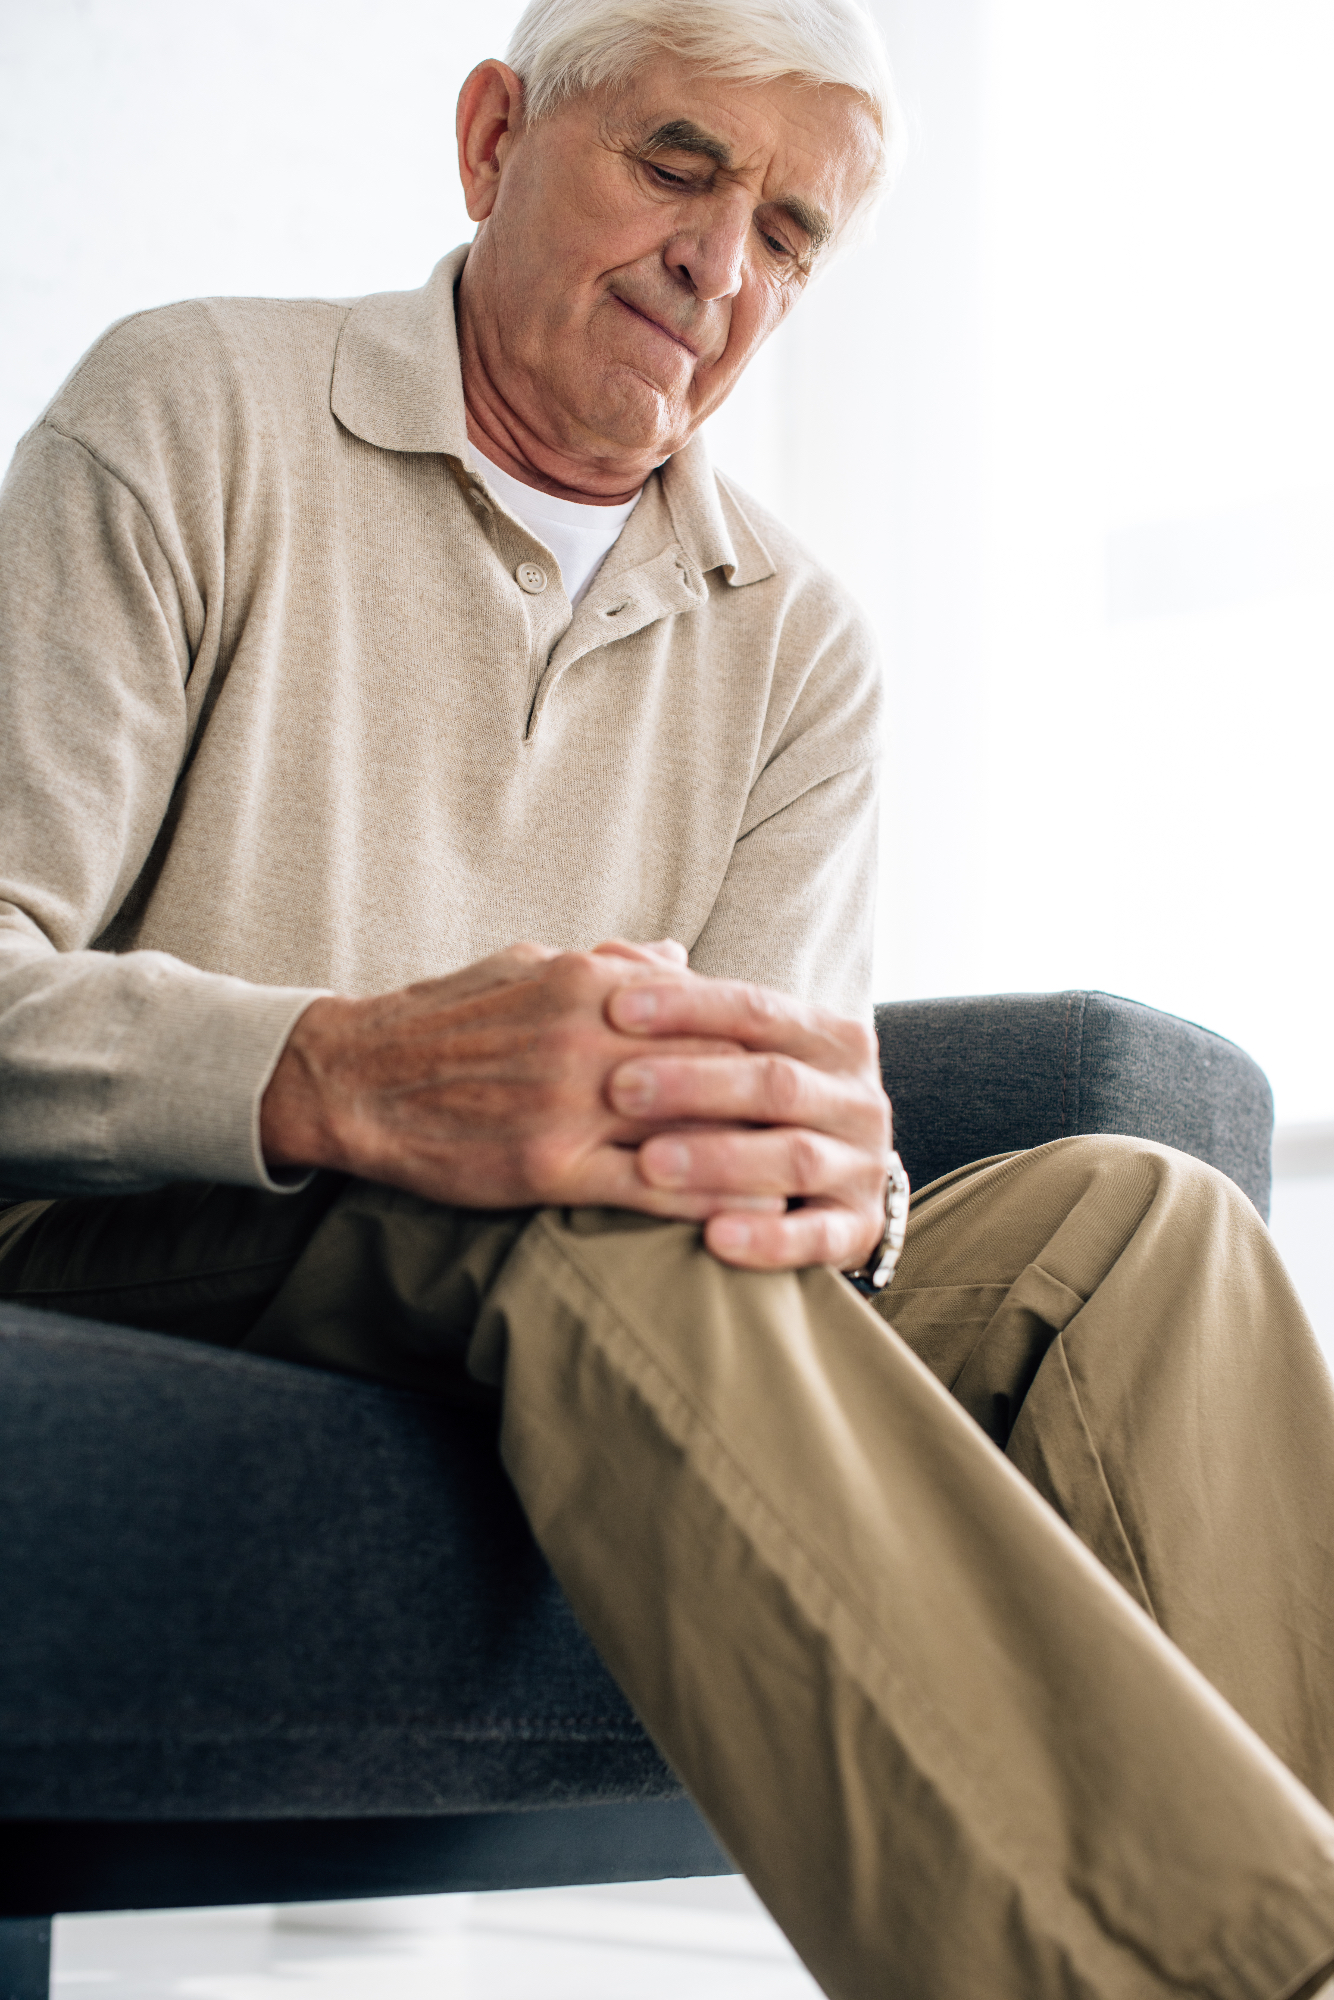 Revmatoidni artritis je nekaj, kar se lahko izboljša